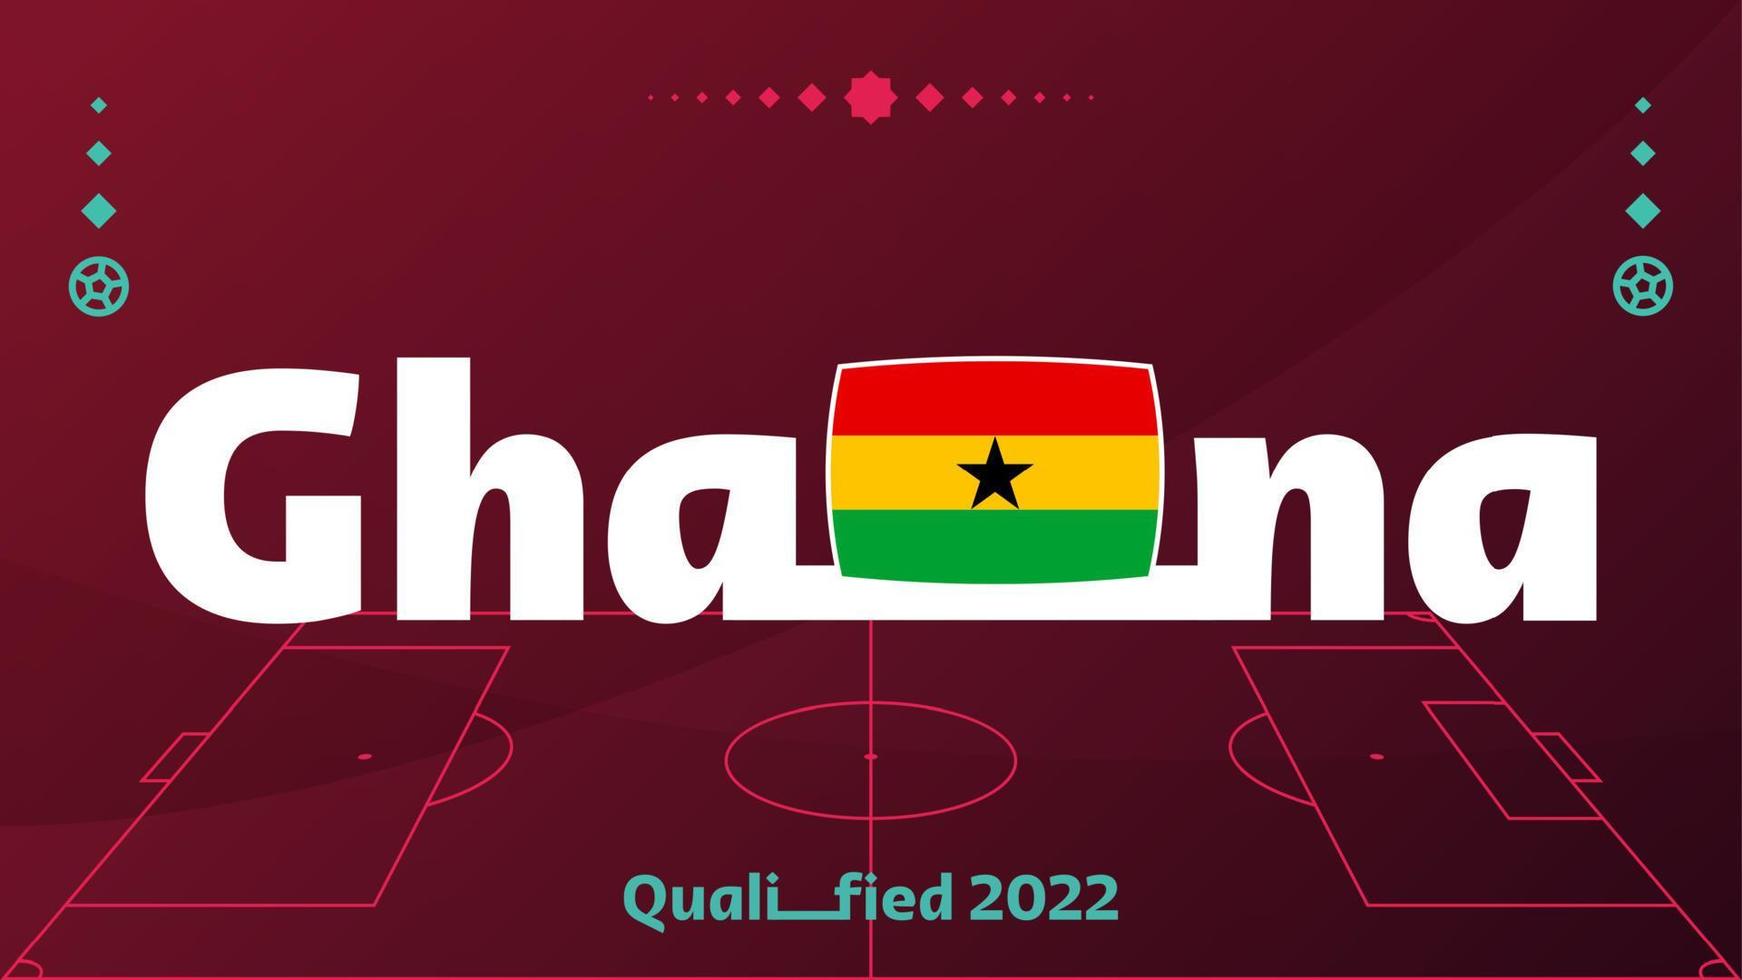 Ghana vlag en tekst op 2022 voetbaltoernooi achtergrond. vector illustratie voetbal patroon voor banner, kaart, website. nationale vlag ghana